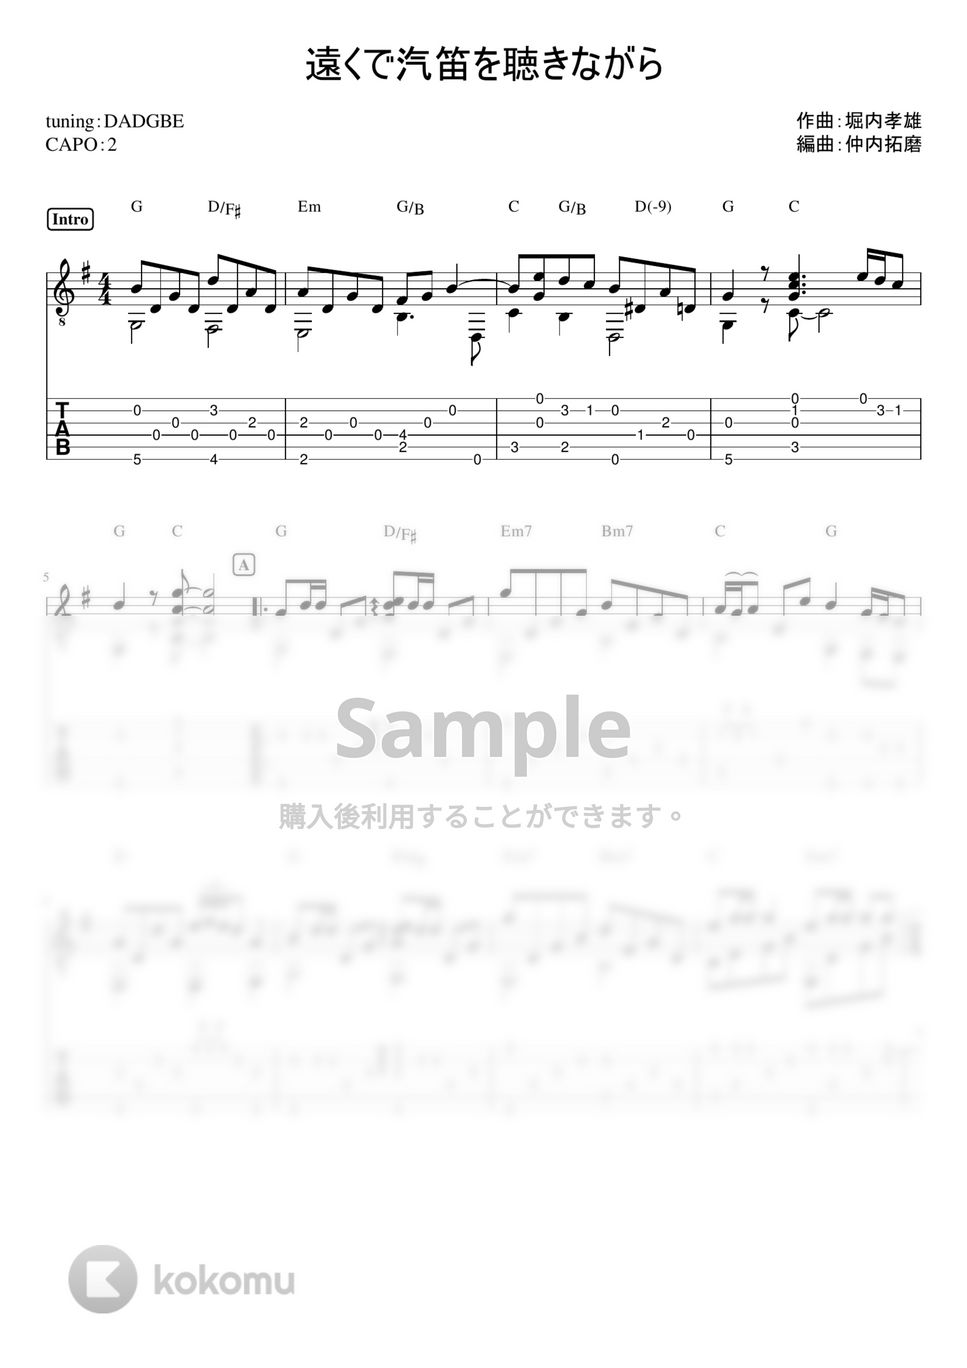 アリス - 遠くで汽笛を聞きながら (ソロギターTAB譜) by 仲内拓磨